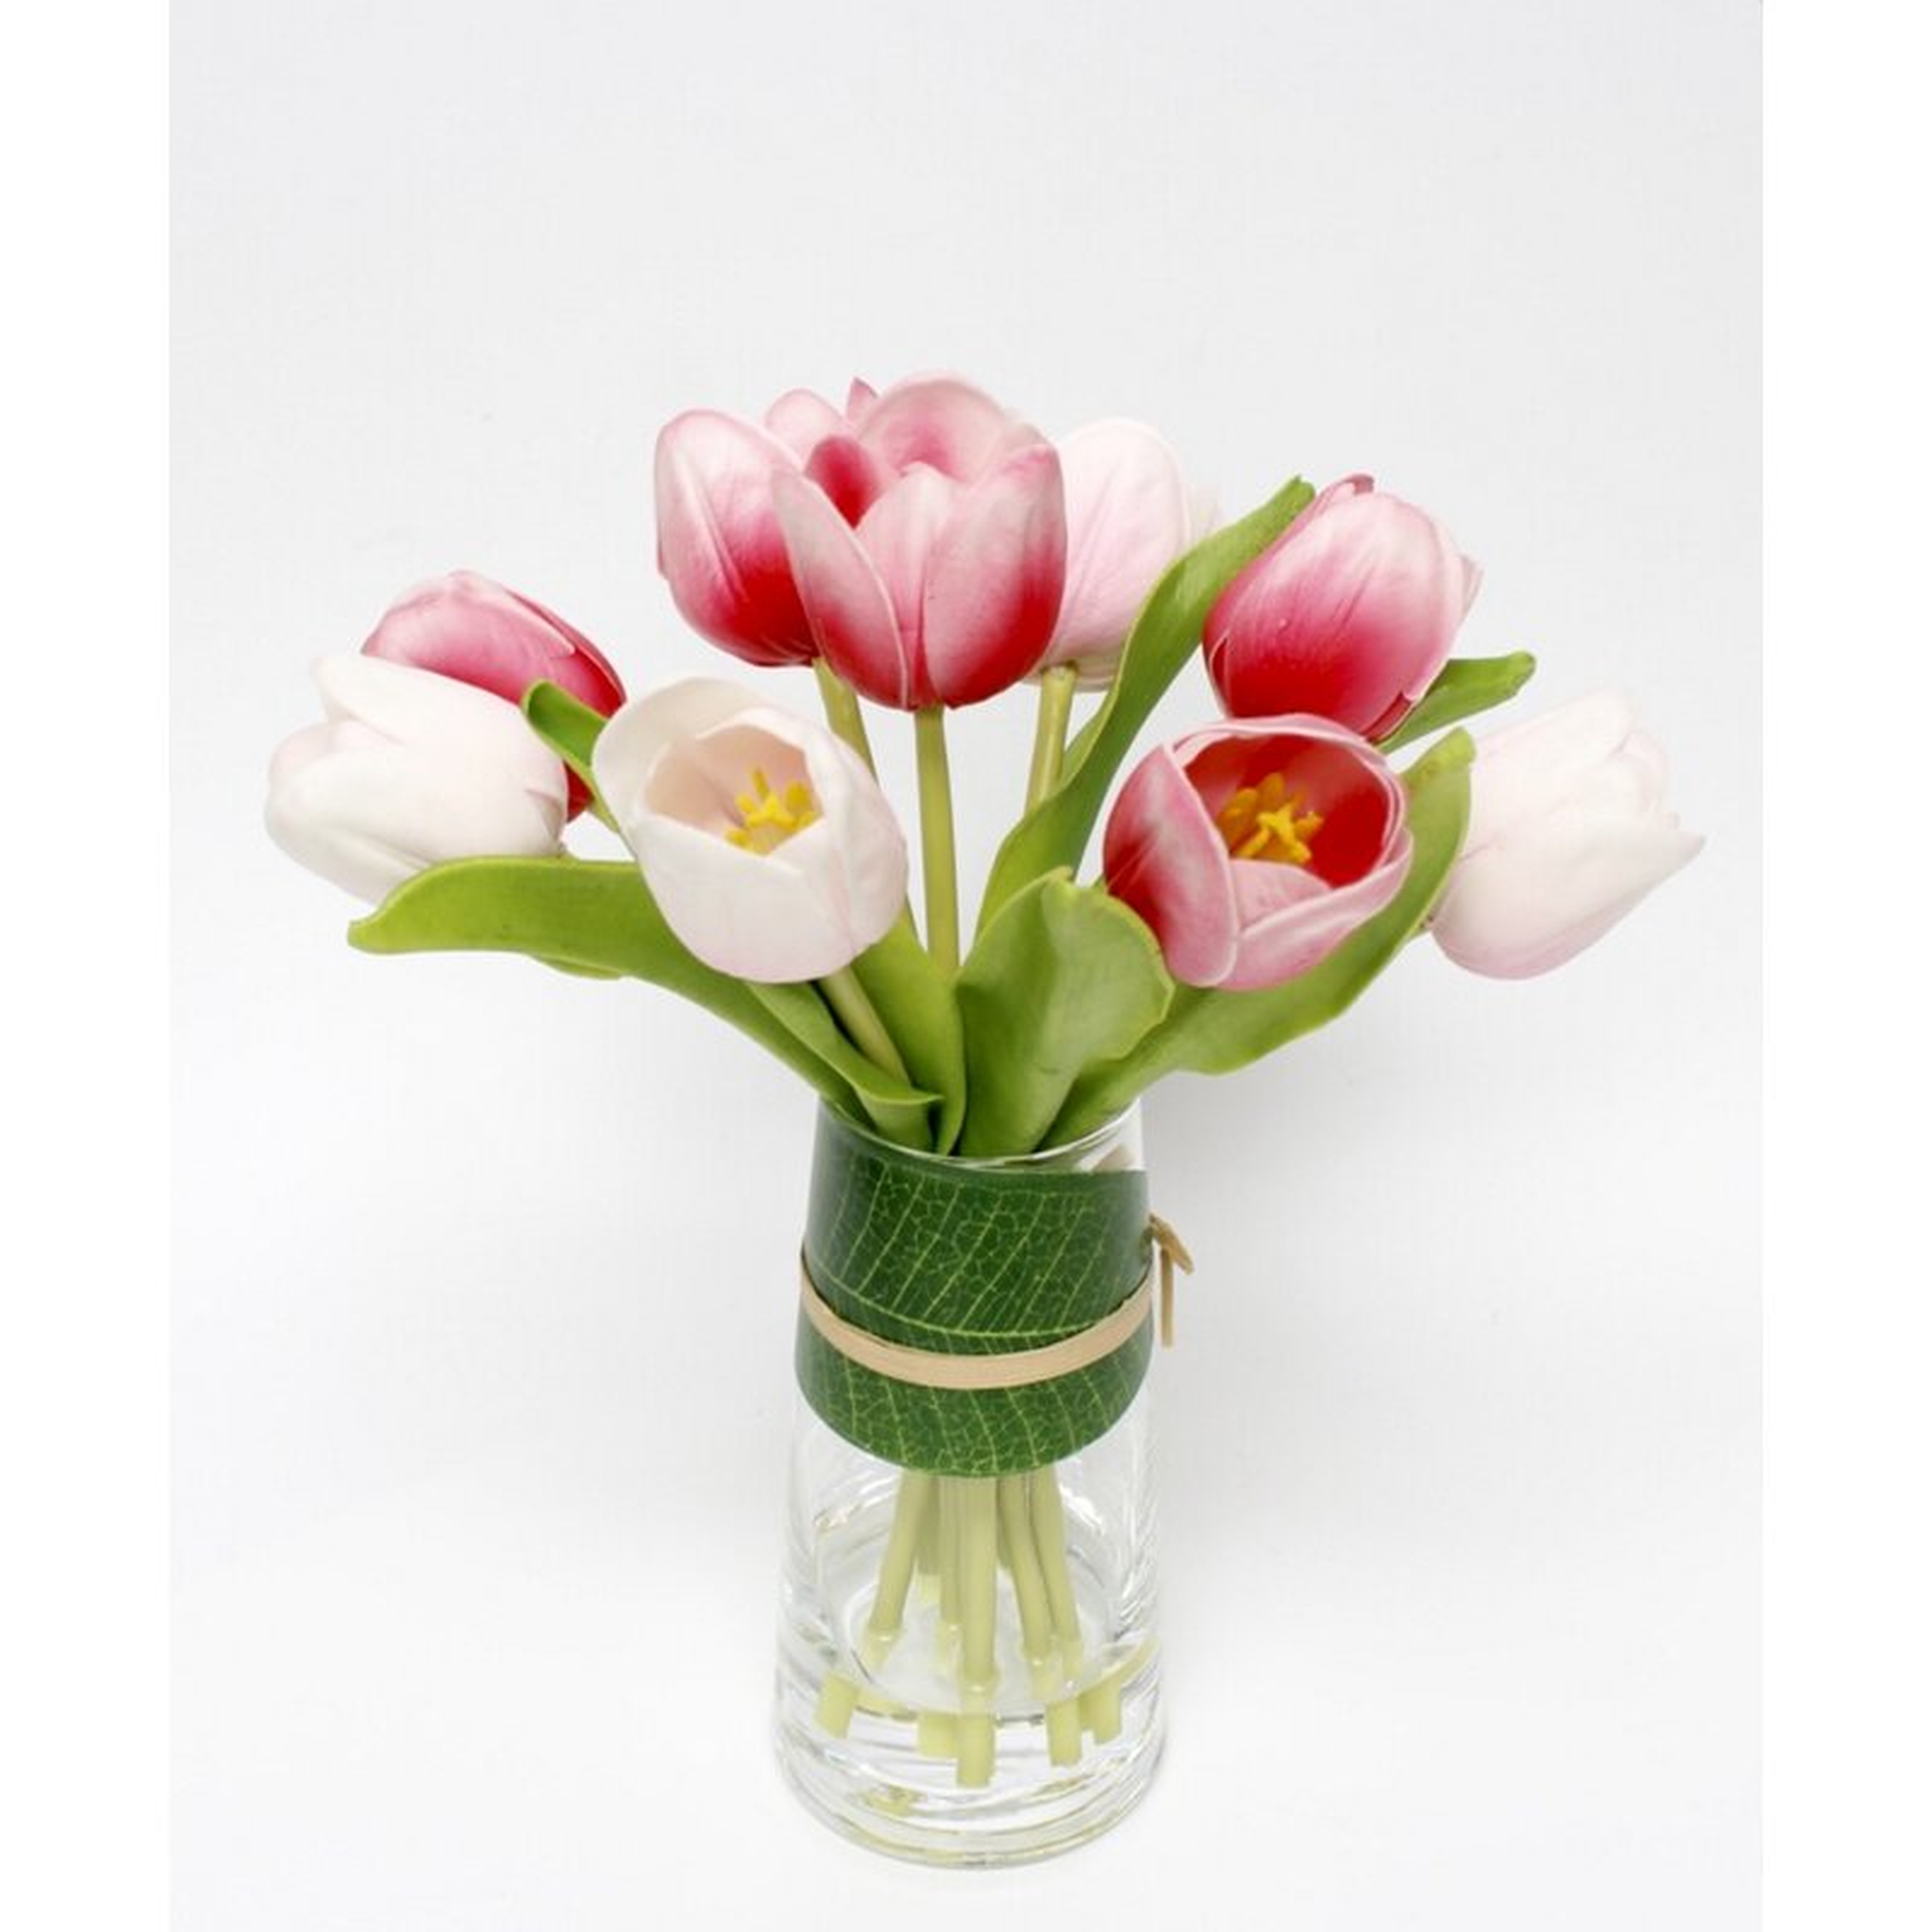 Tulip Floral Arrangement in Vase - Wayfair